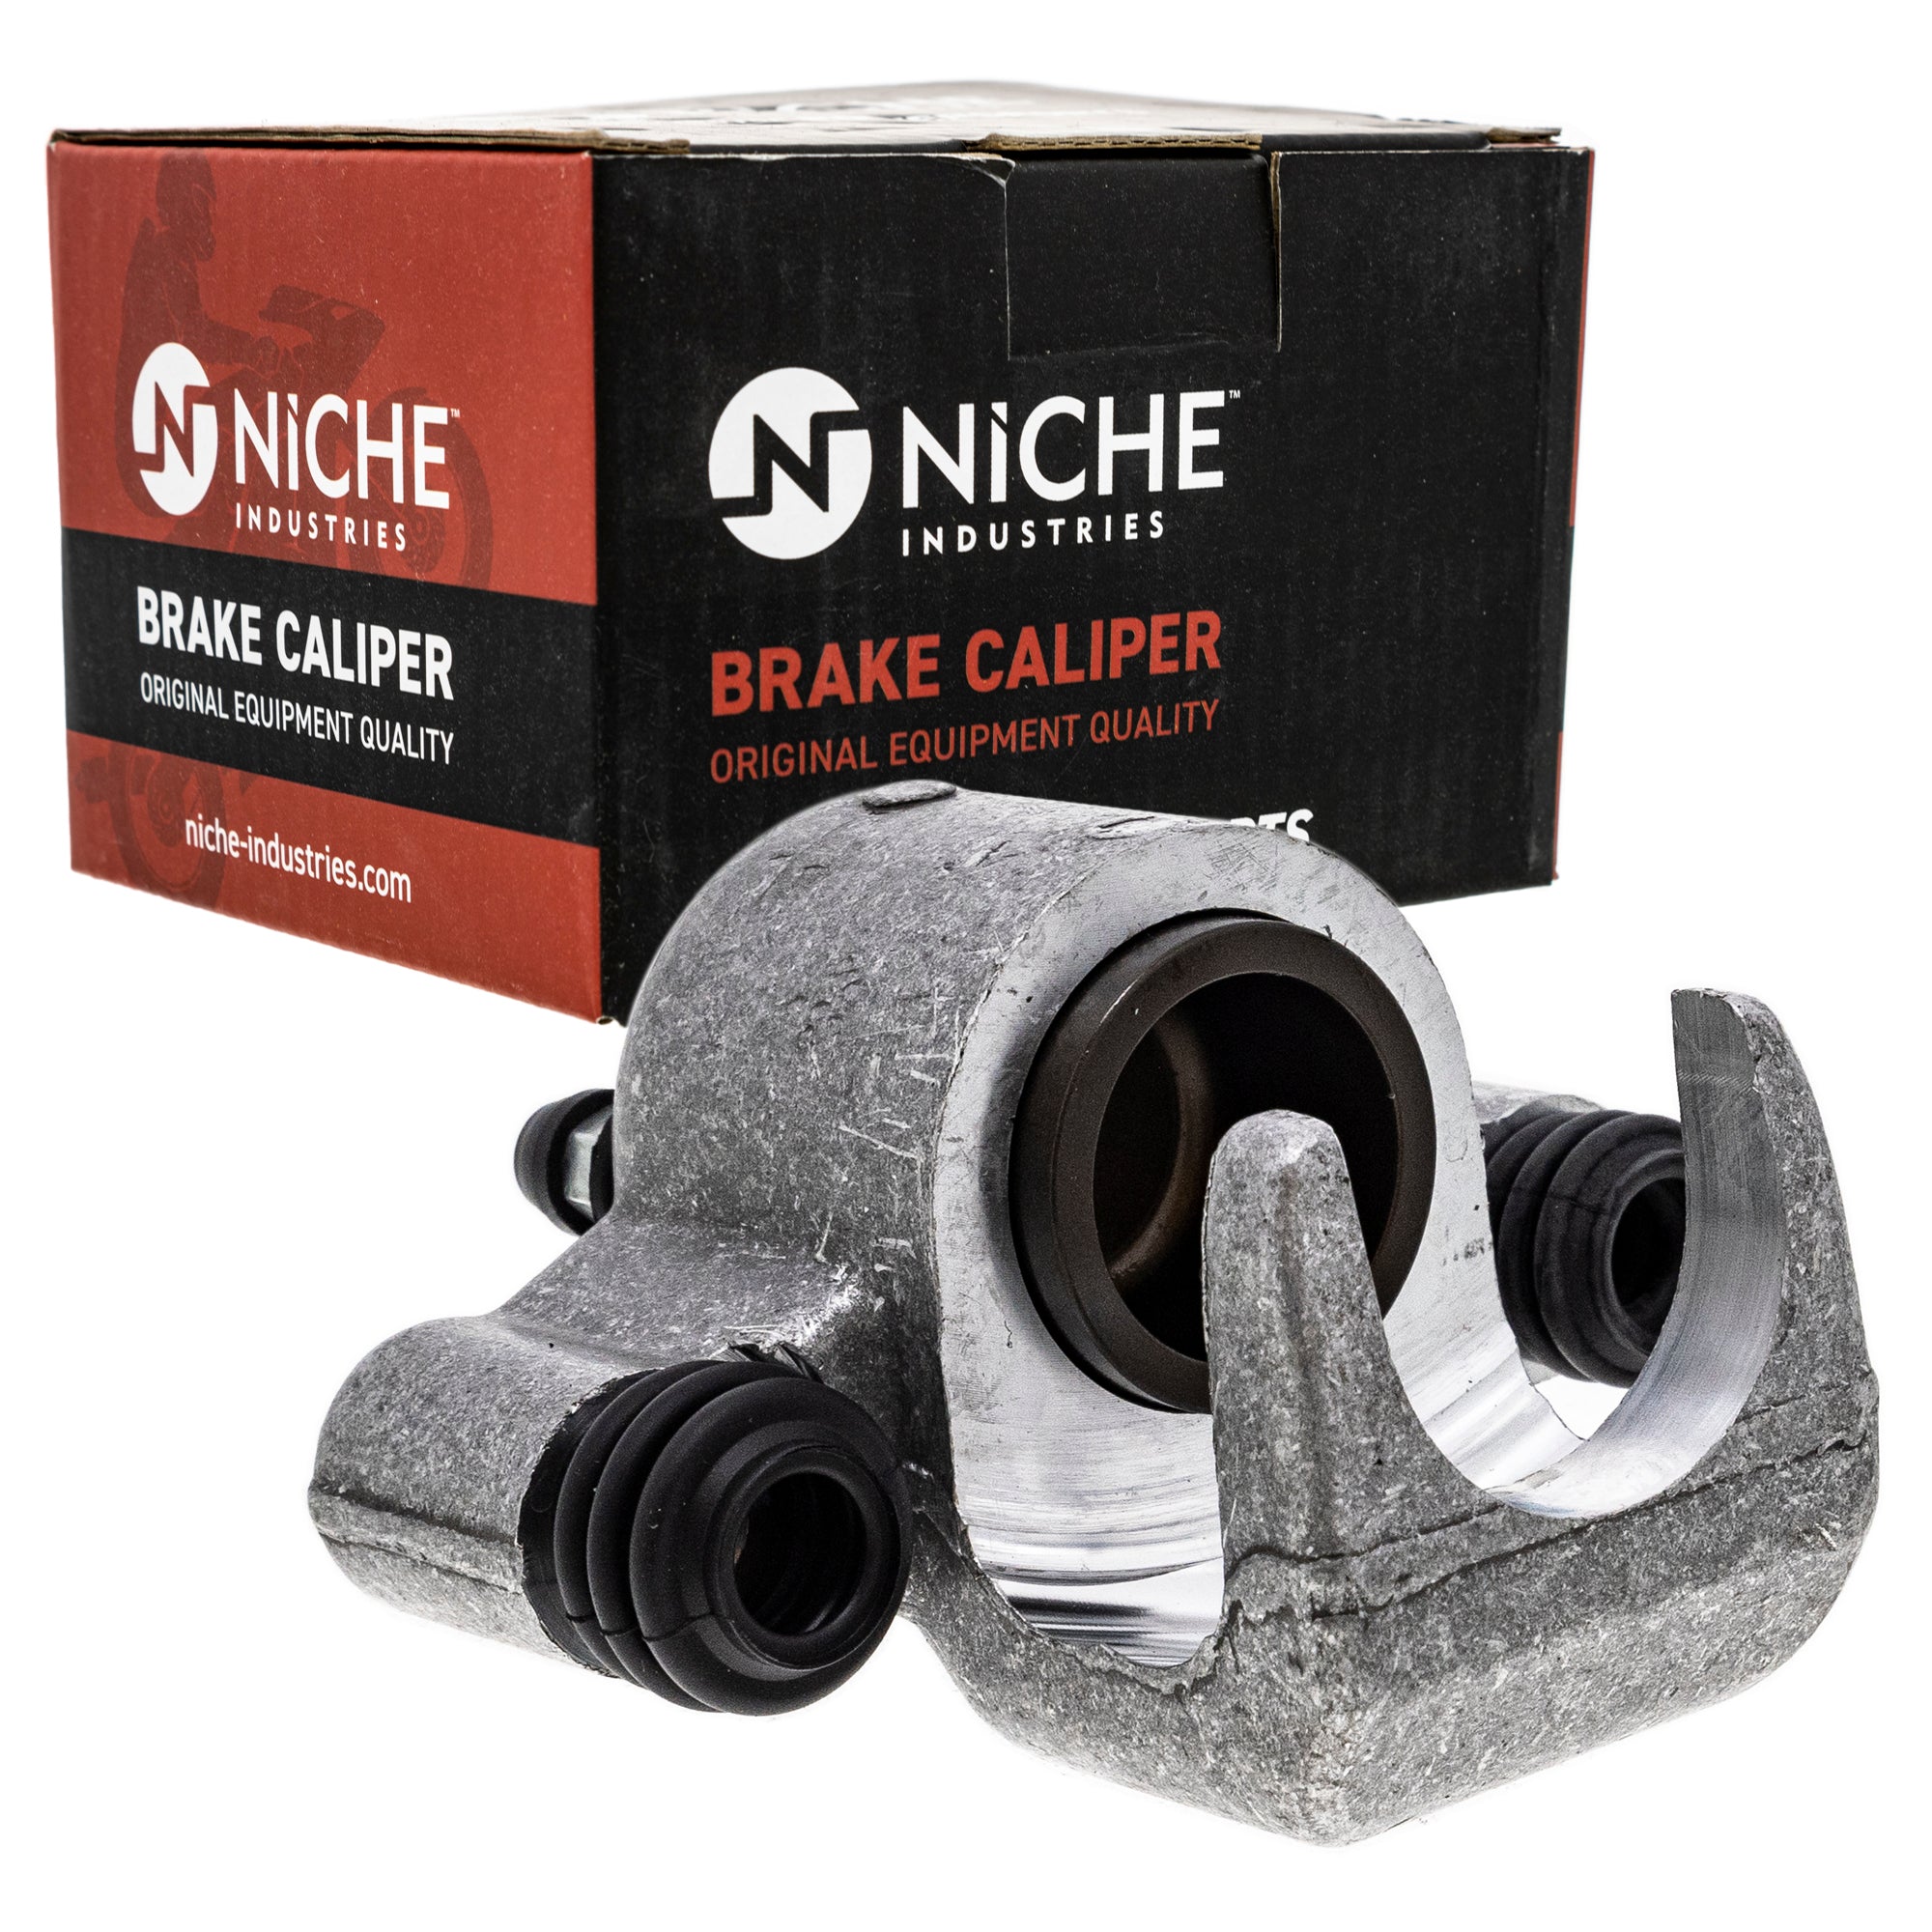 NICHE MK1001035 Brake Caliper Kit